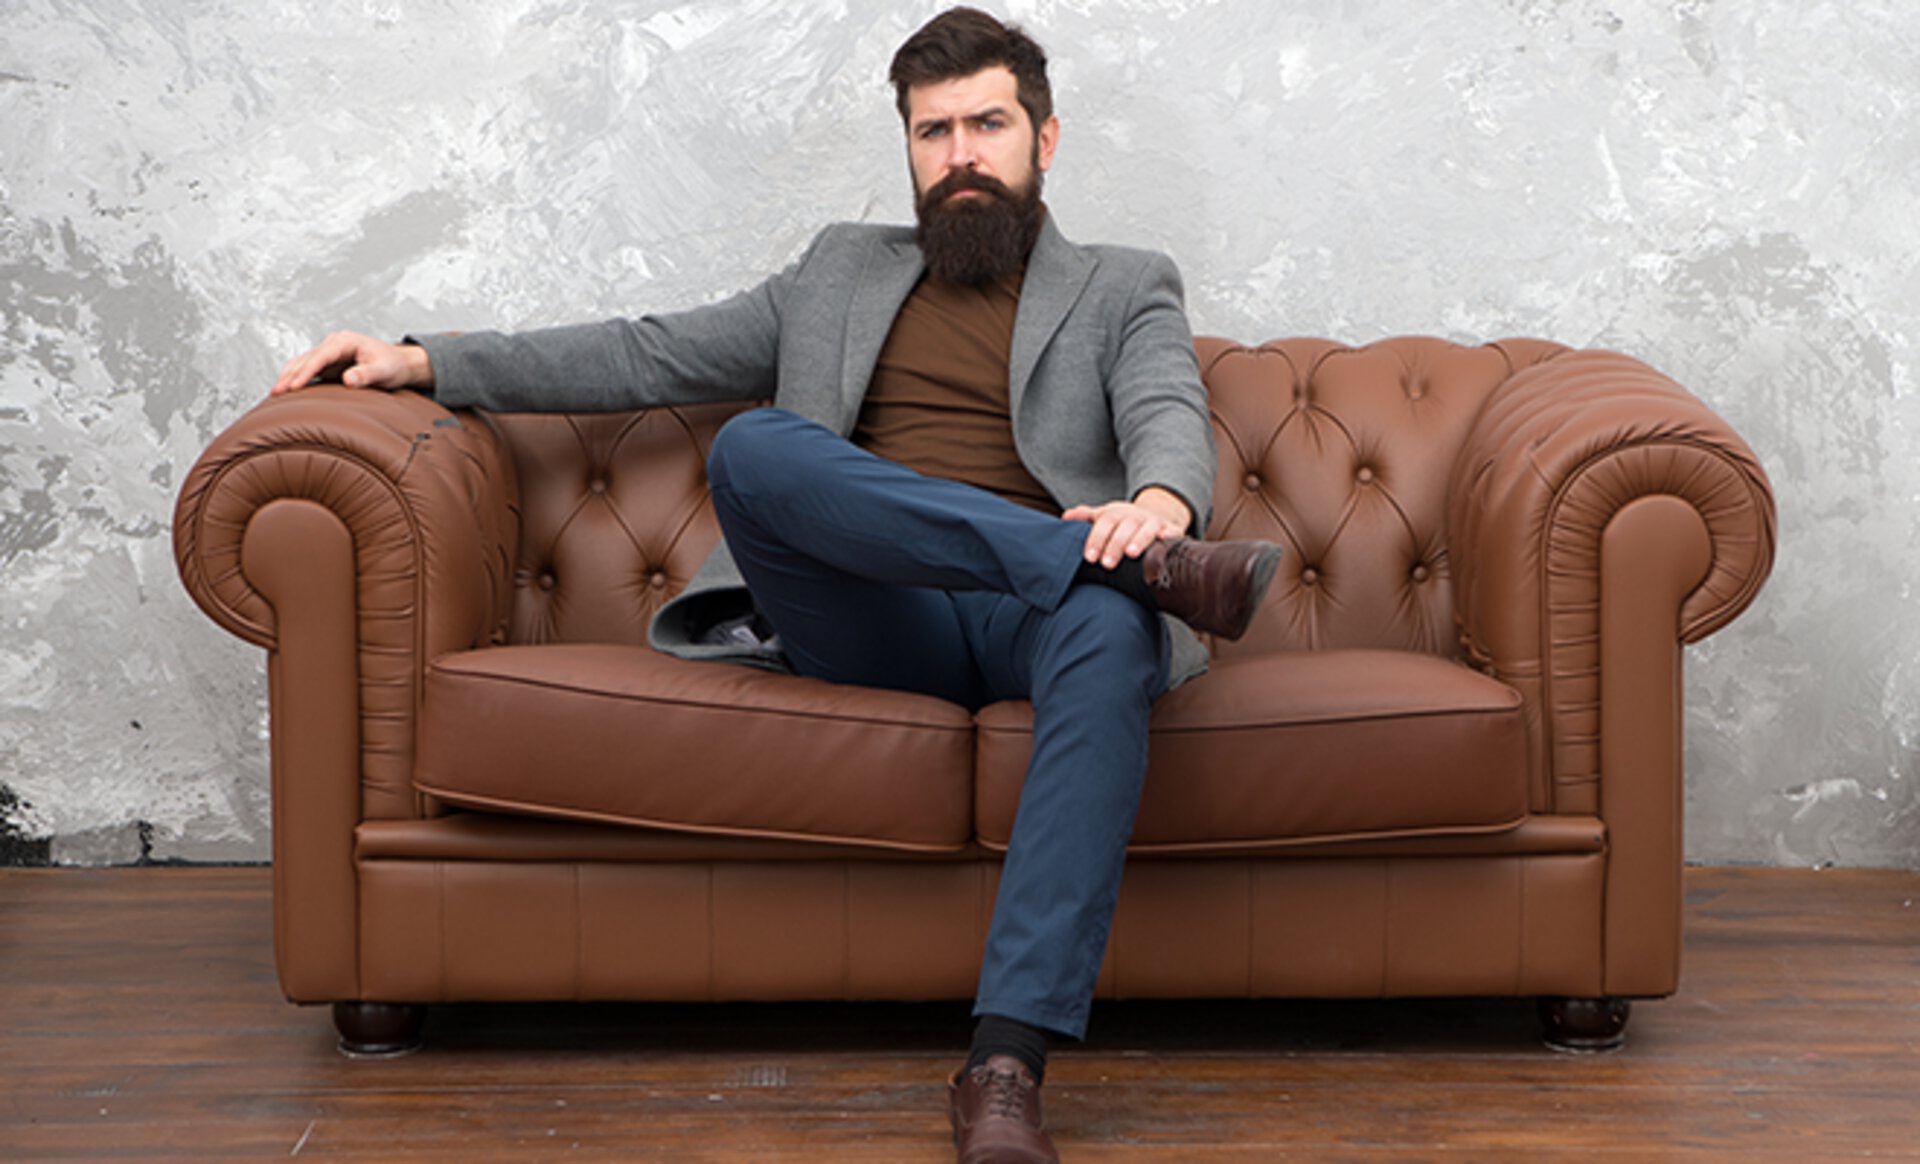 Mann mit Vollbart sitzt auf einem braunen Ledersofa von Möbel Inhofer